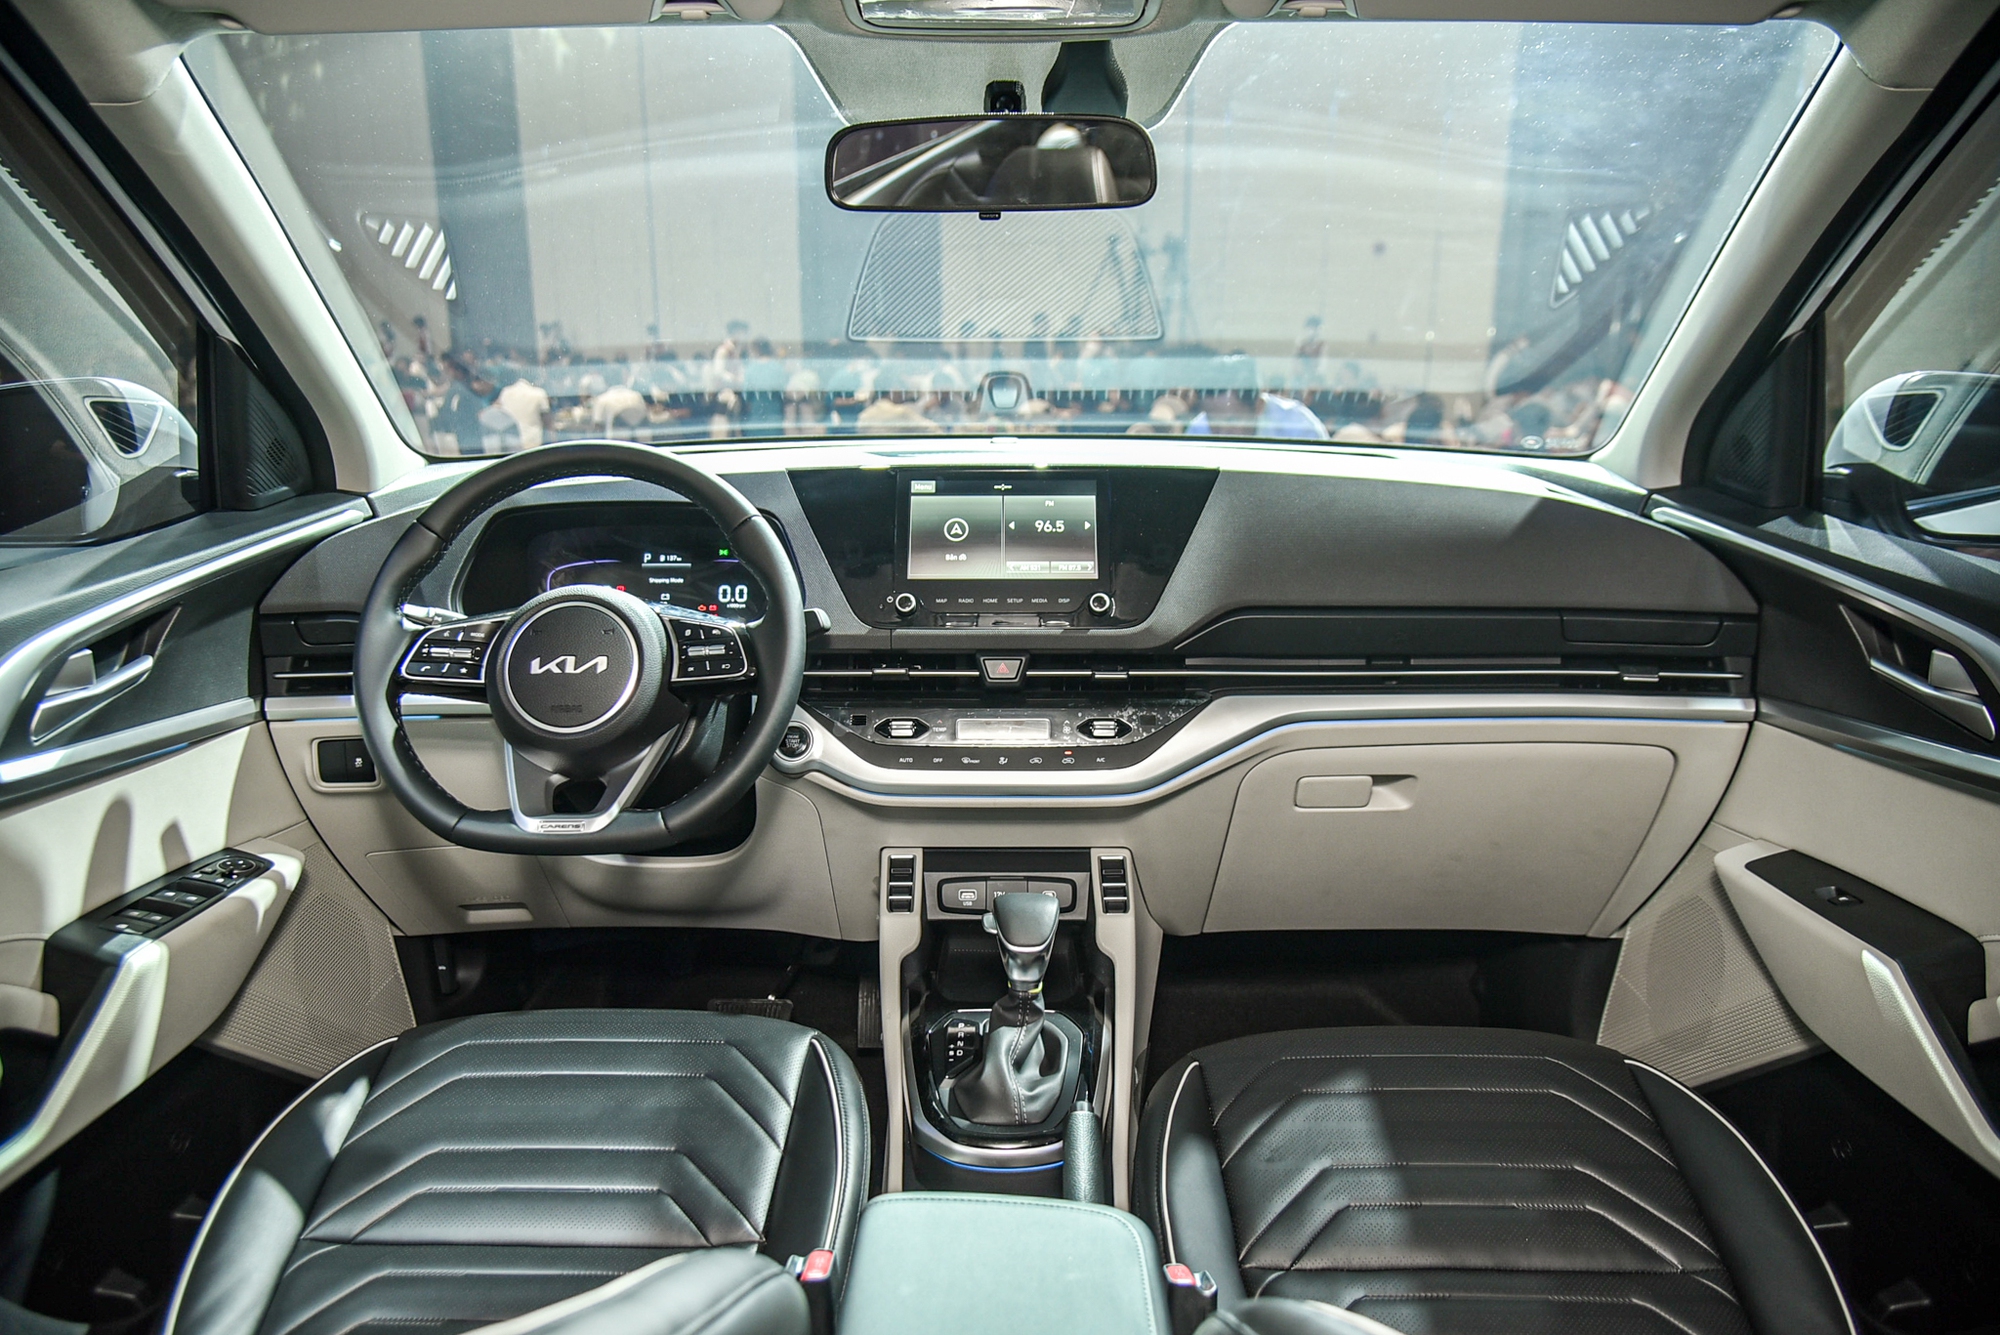 Chi tiết Kia Carens phiên bản xăng 1.5 Luxury: Giá 699 triệu đồng, thiếu nhiều trang bị so với phiên bản cao hơn - Ảnh 8.